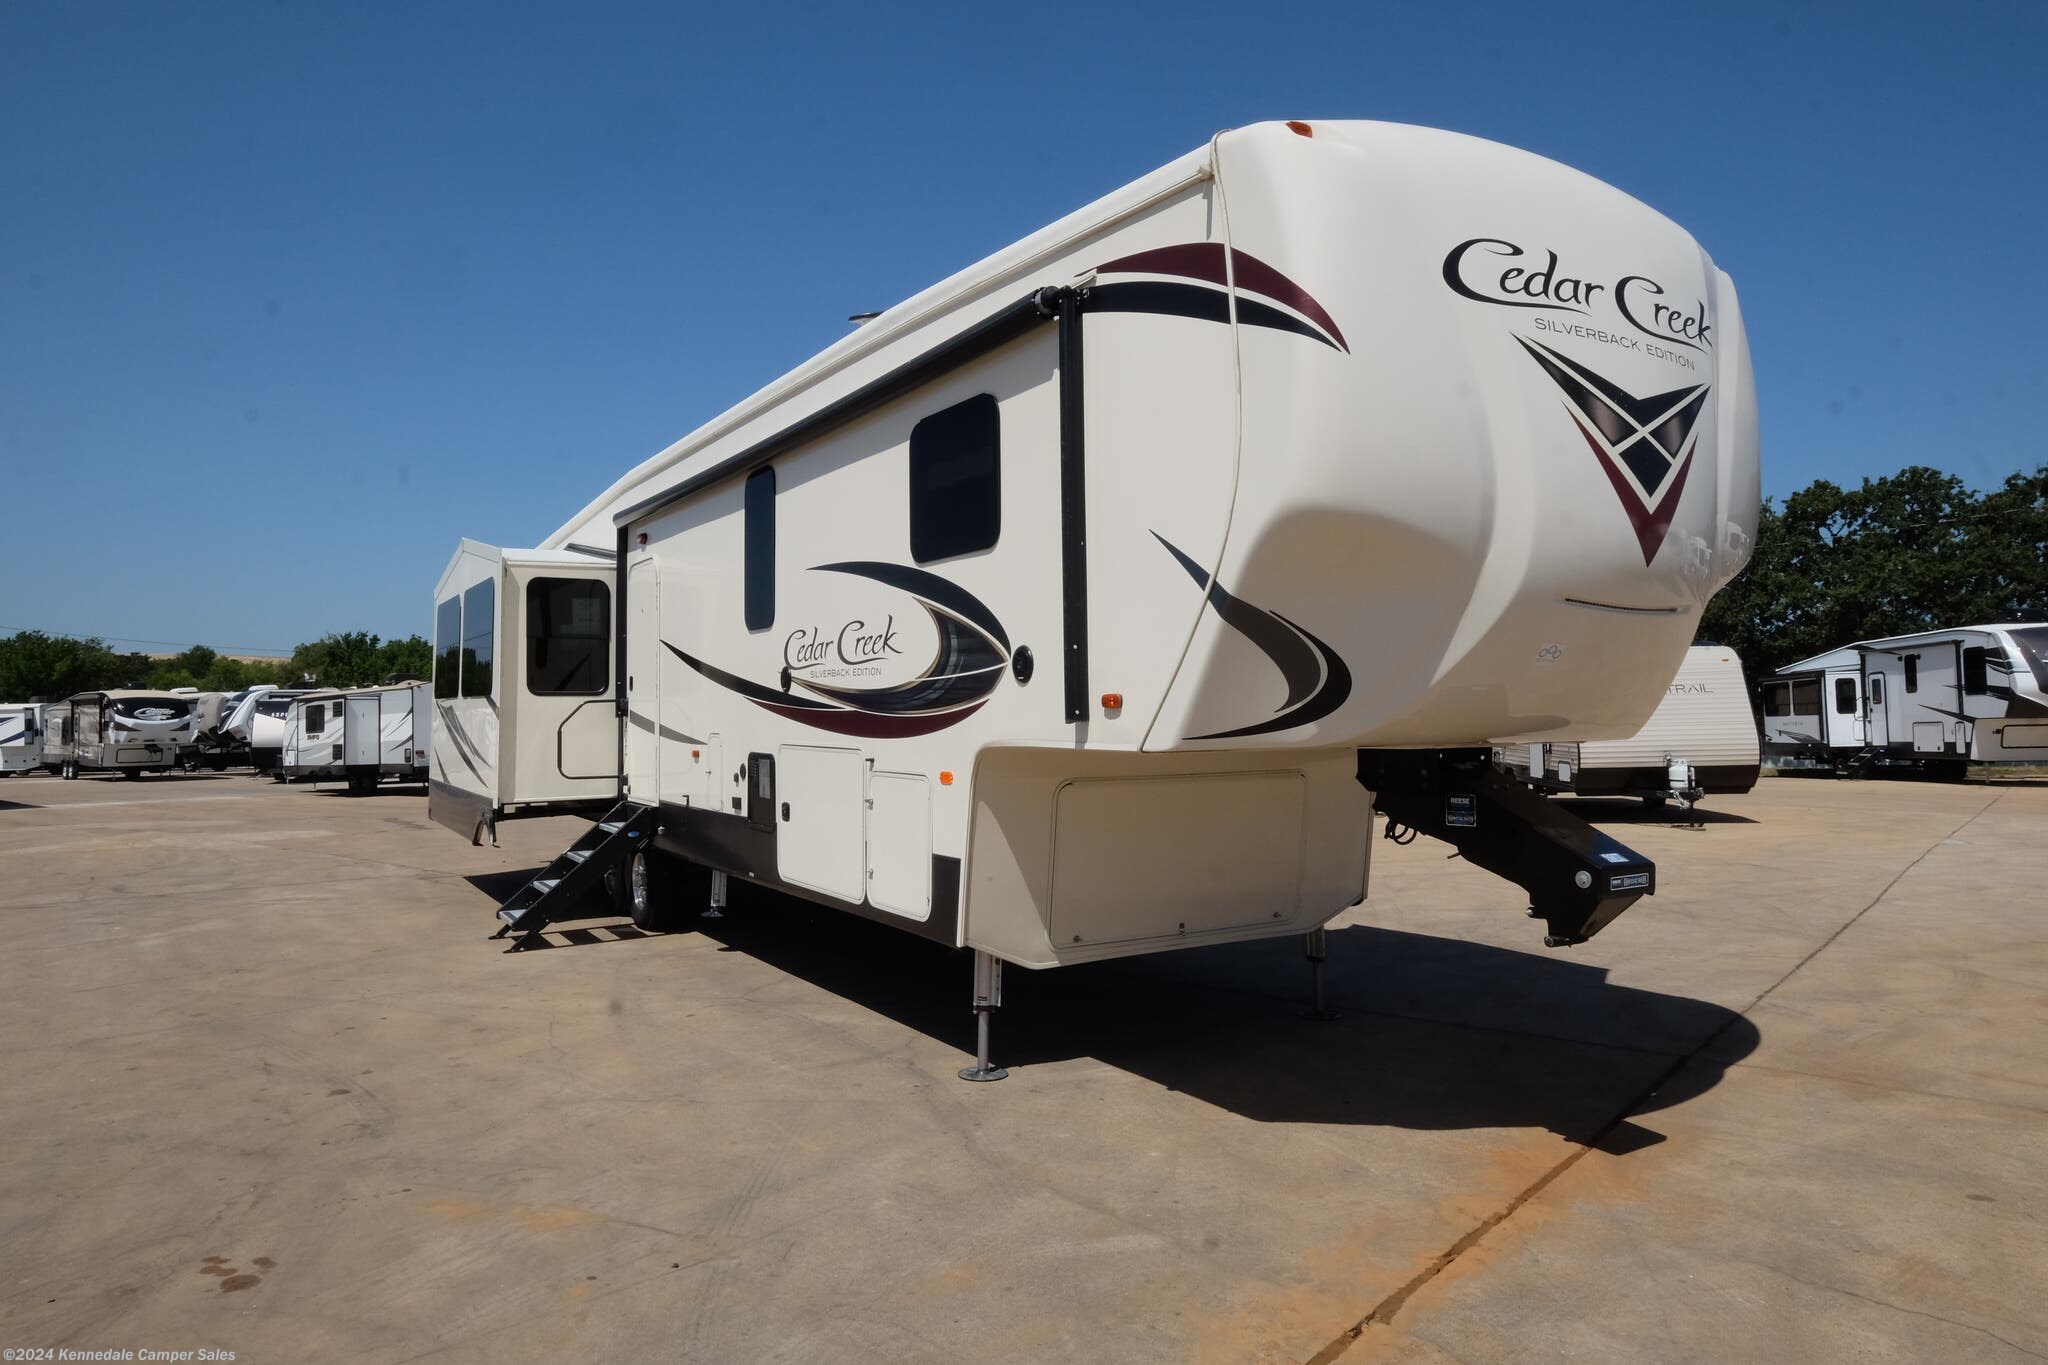 2018 Forest River Cedar Creek Silverback 37MBH RV for Sale in Kennedale, TX 76060 | 219710 2018 Forest River Cedar Creek Silverback 37mbh